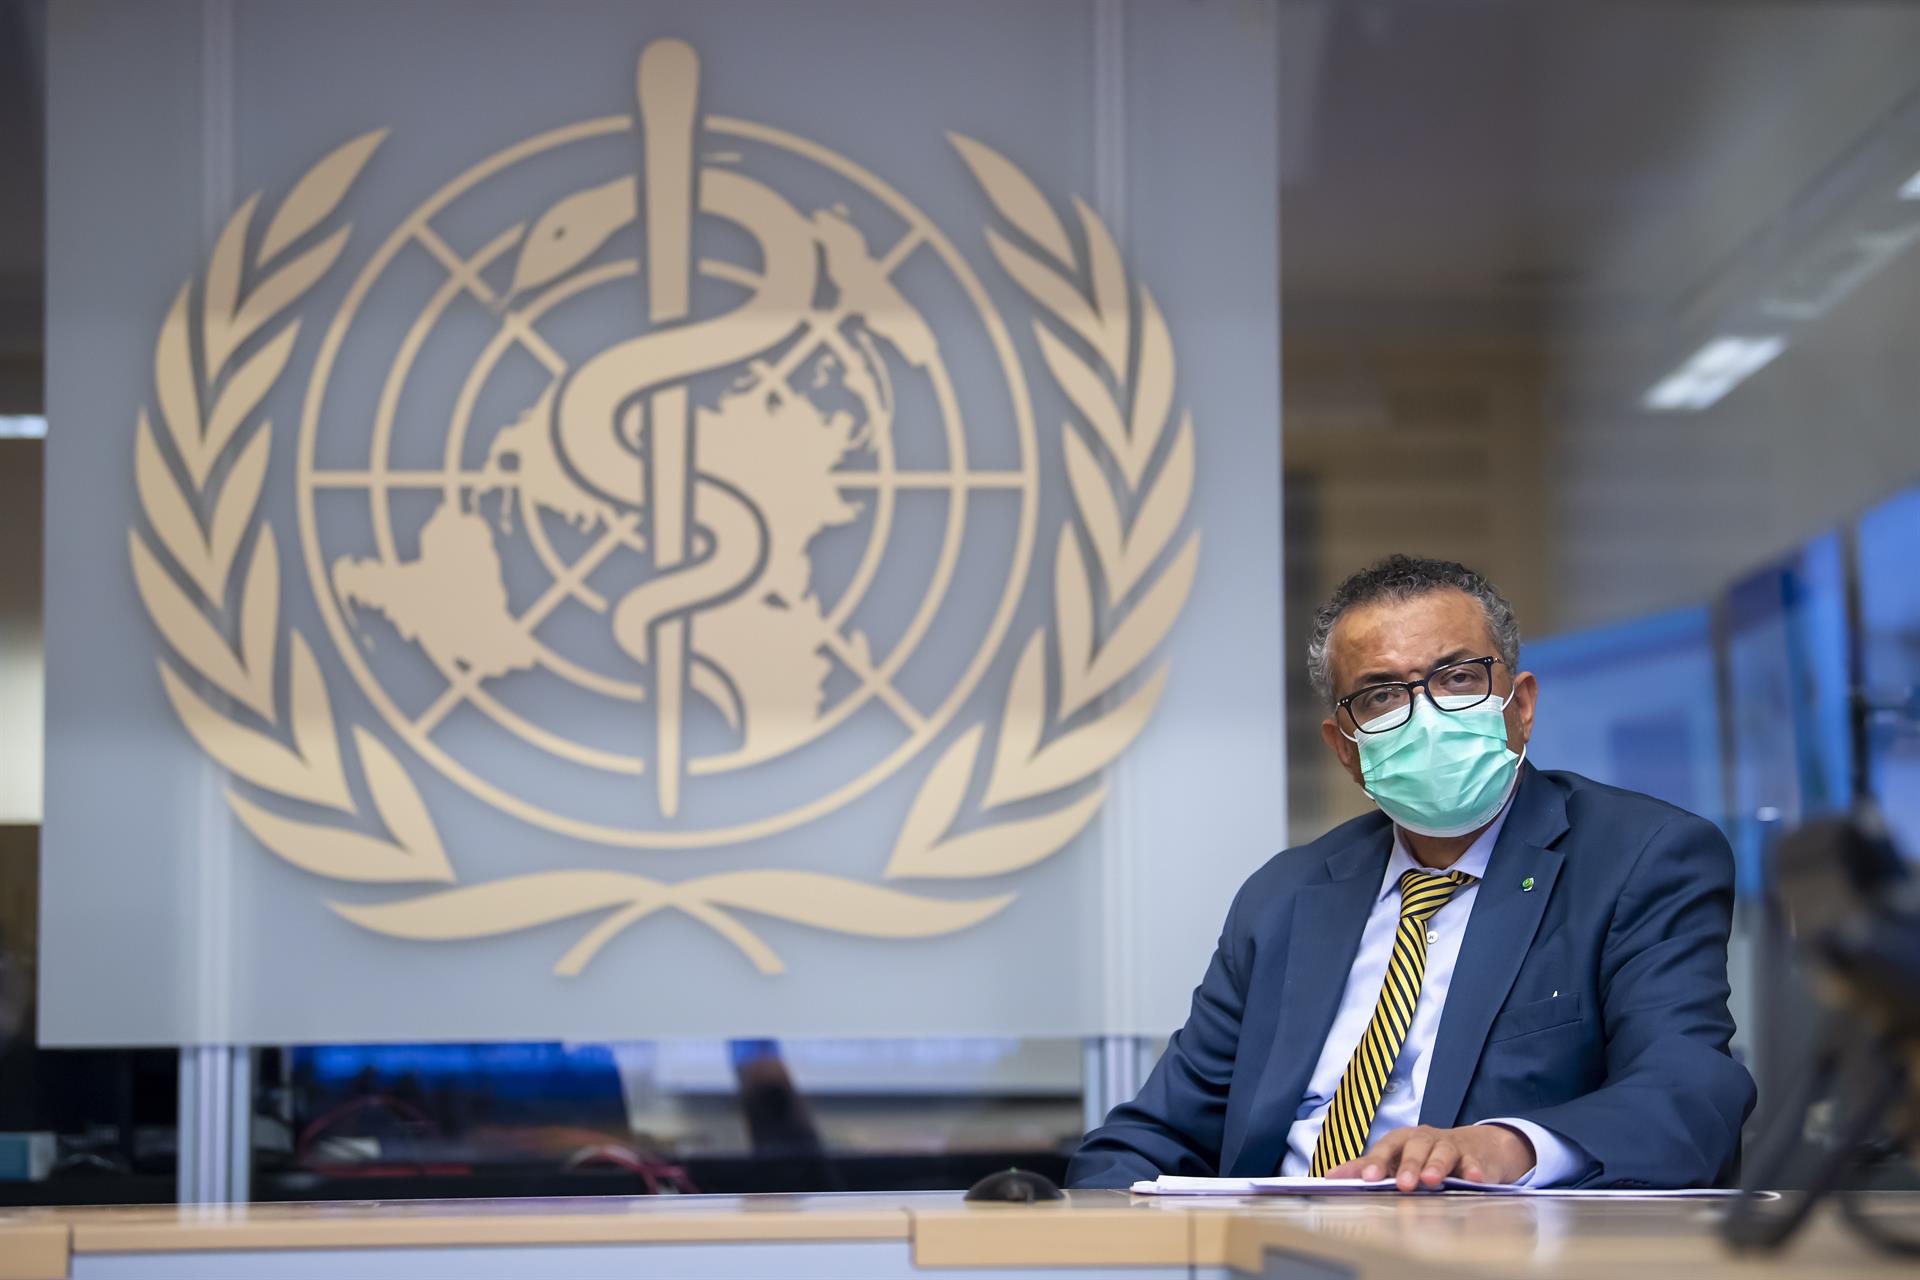 Investigación periodística recoge denuncias en la OMS sobre abusos y cultura de miedo por la pandemia